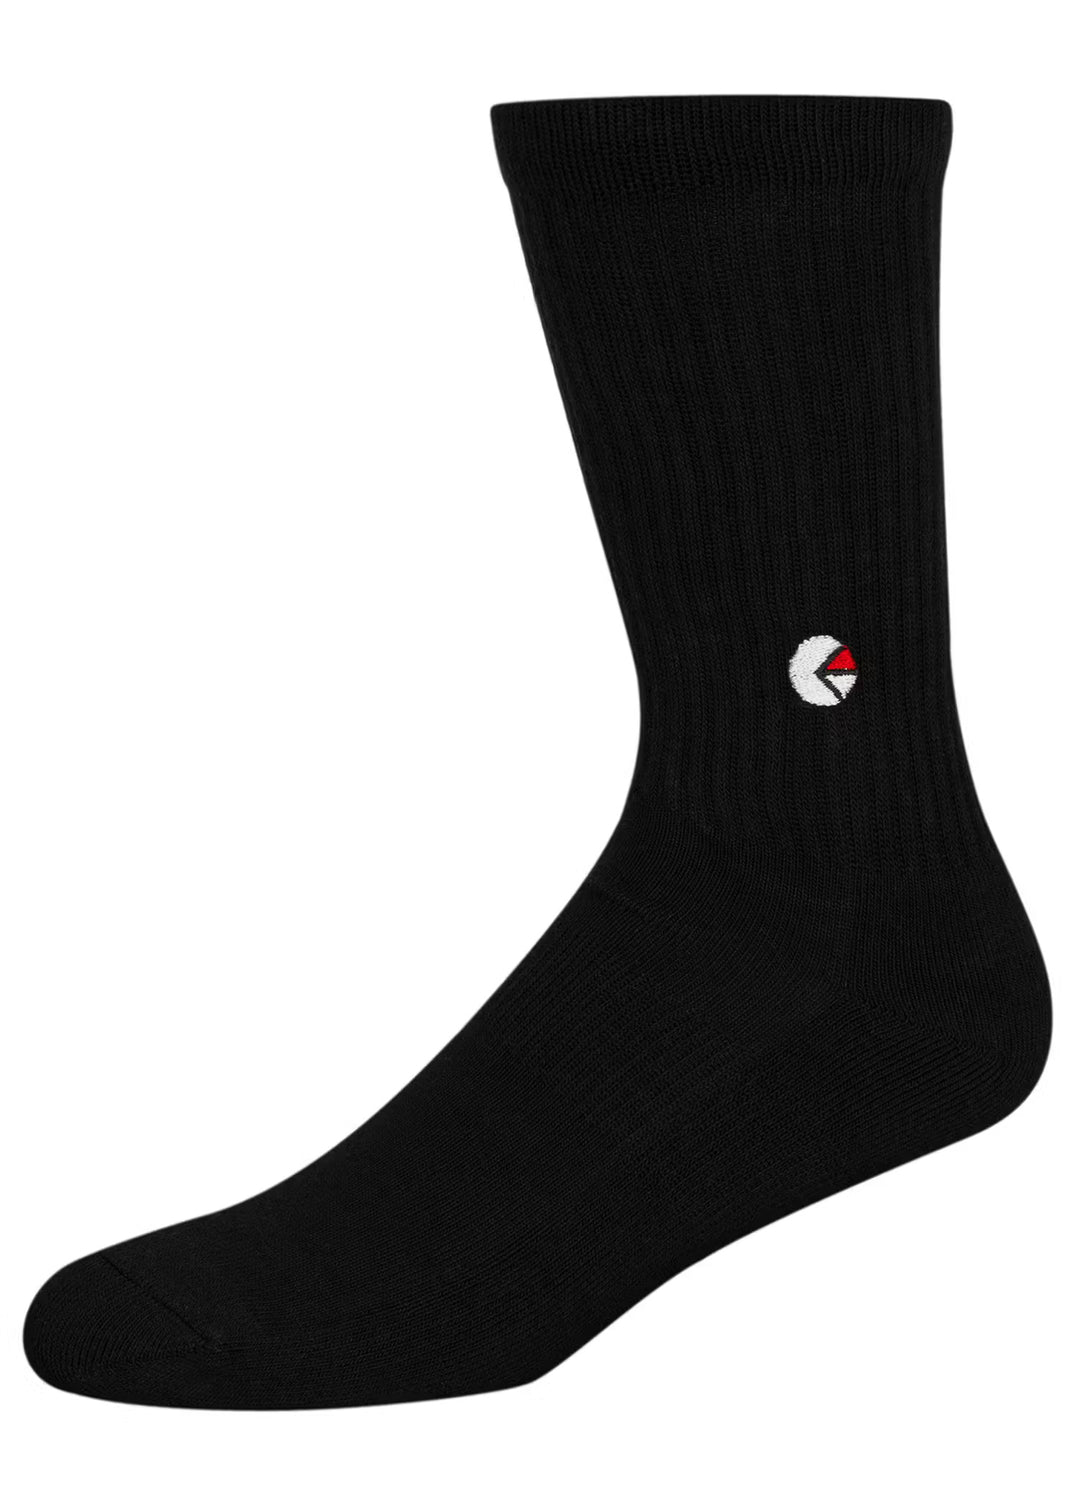 Black Crew Socks - White Logo